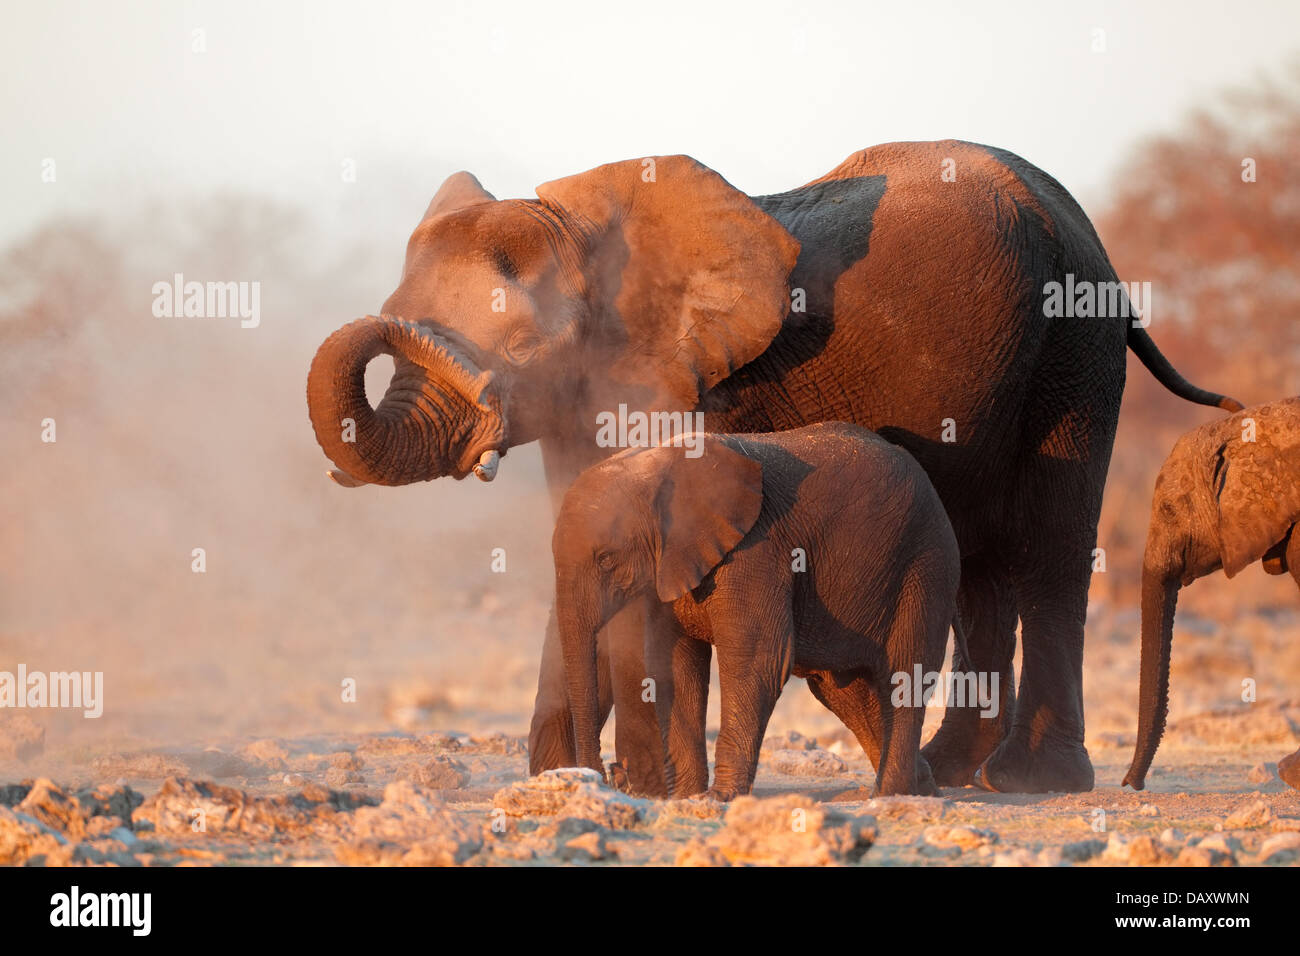 African elephants (Loxodonta africana) covered in dust, Etosha National Park, Namibia Stock Photo